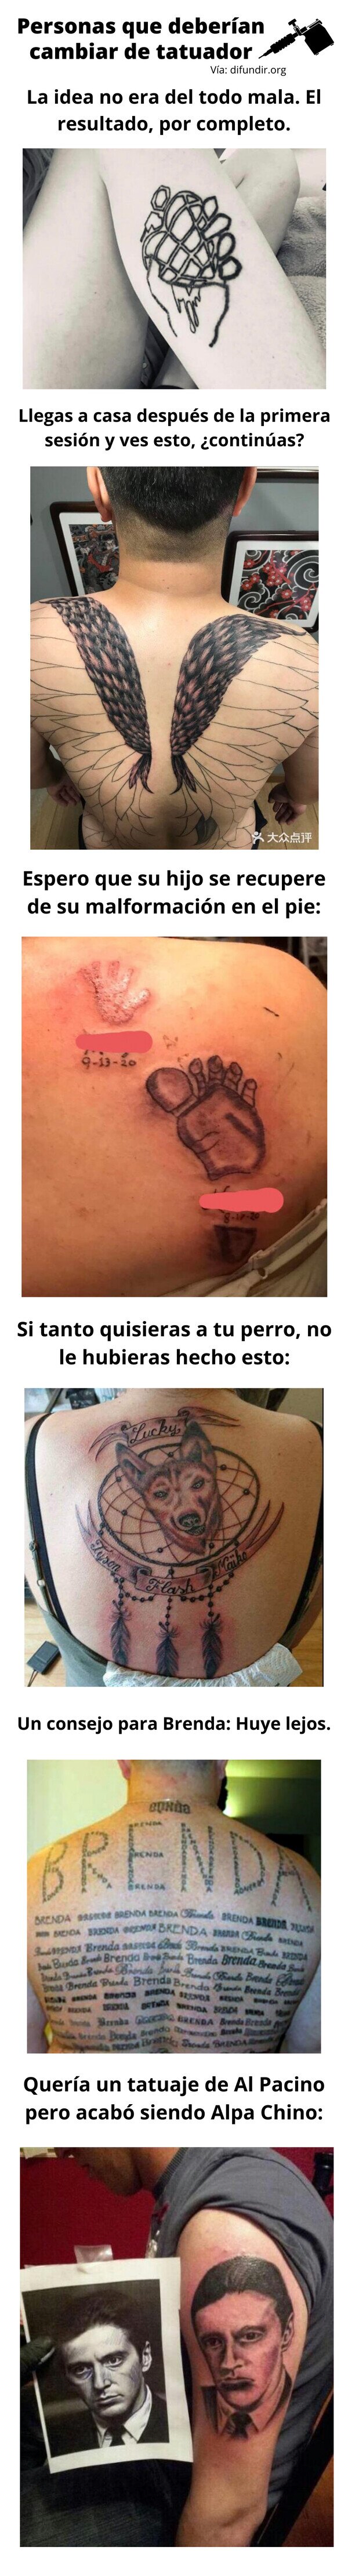 Meme_otros - Personas que deberían cambiar de tatuador